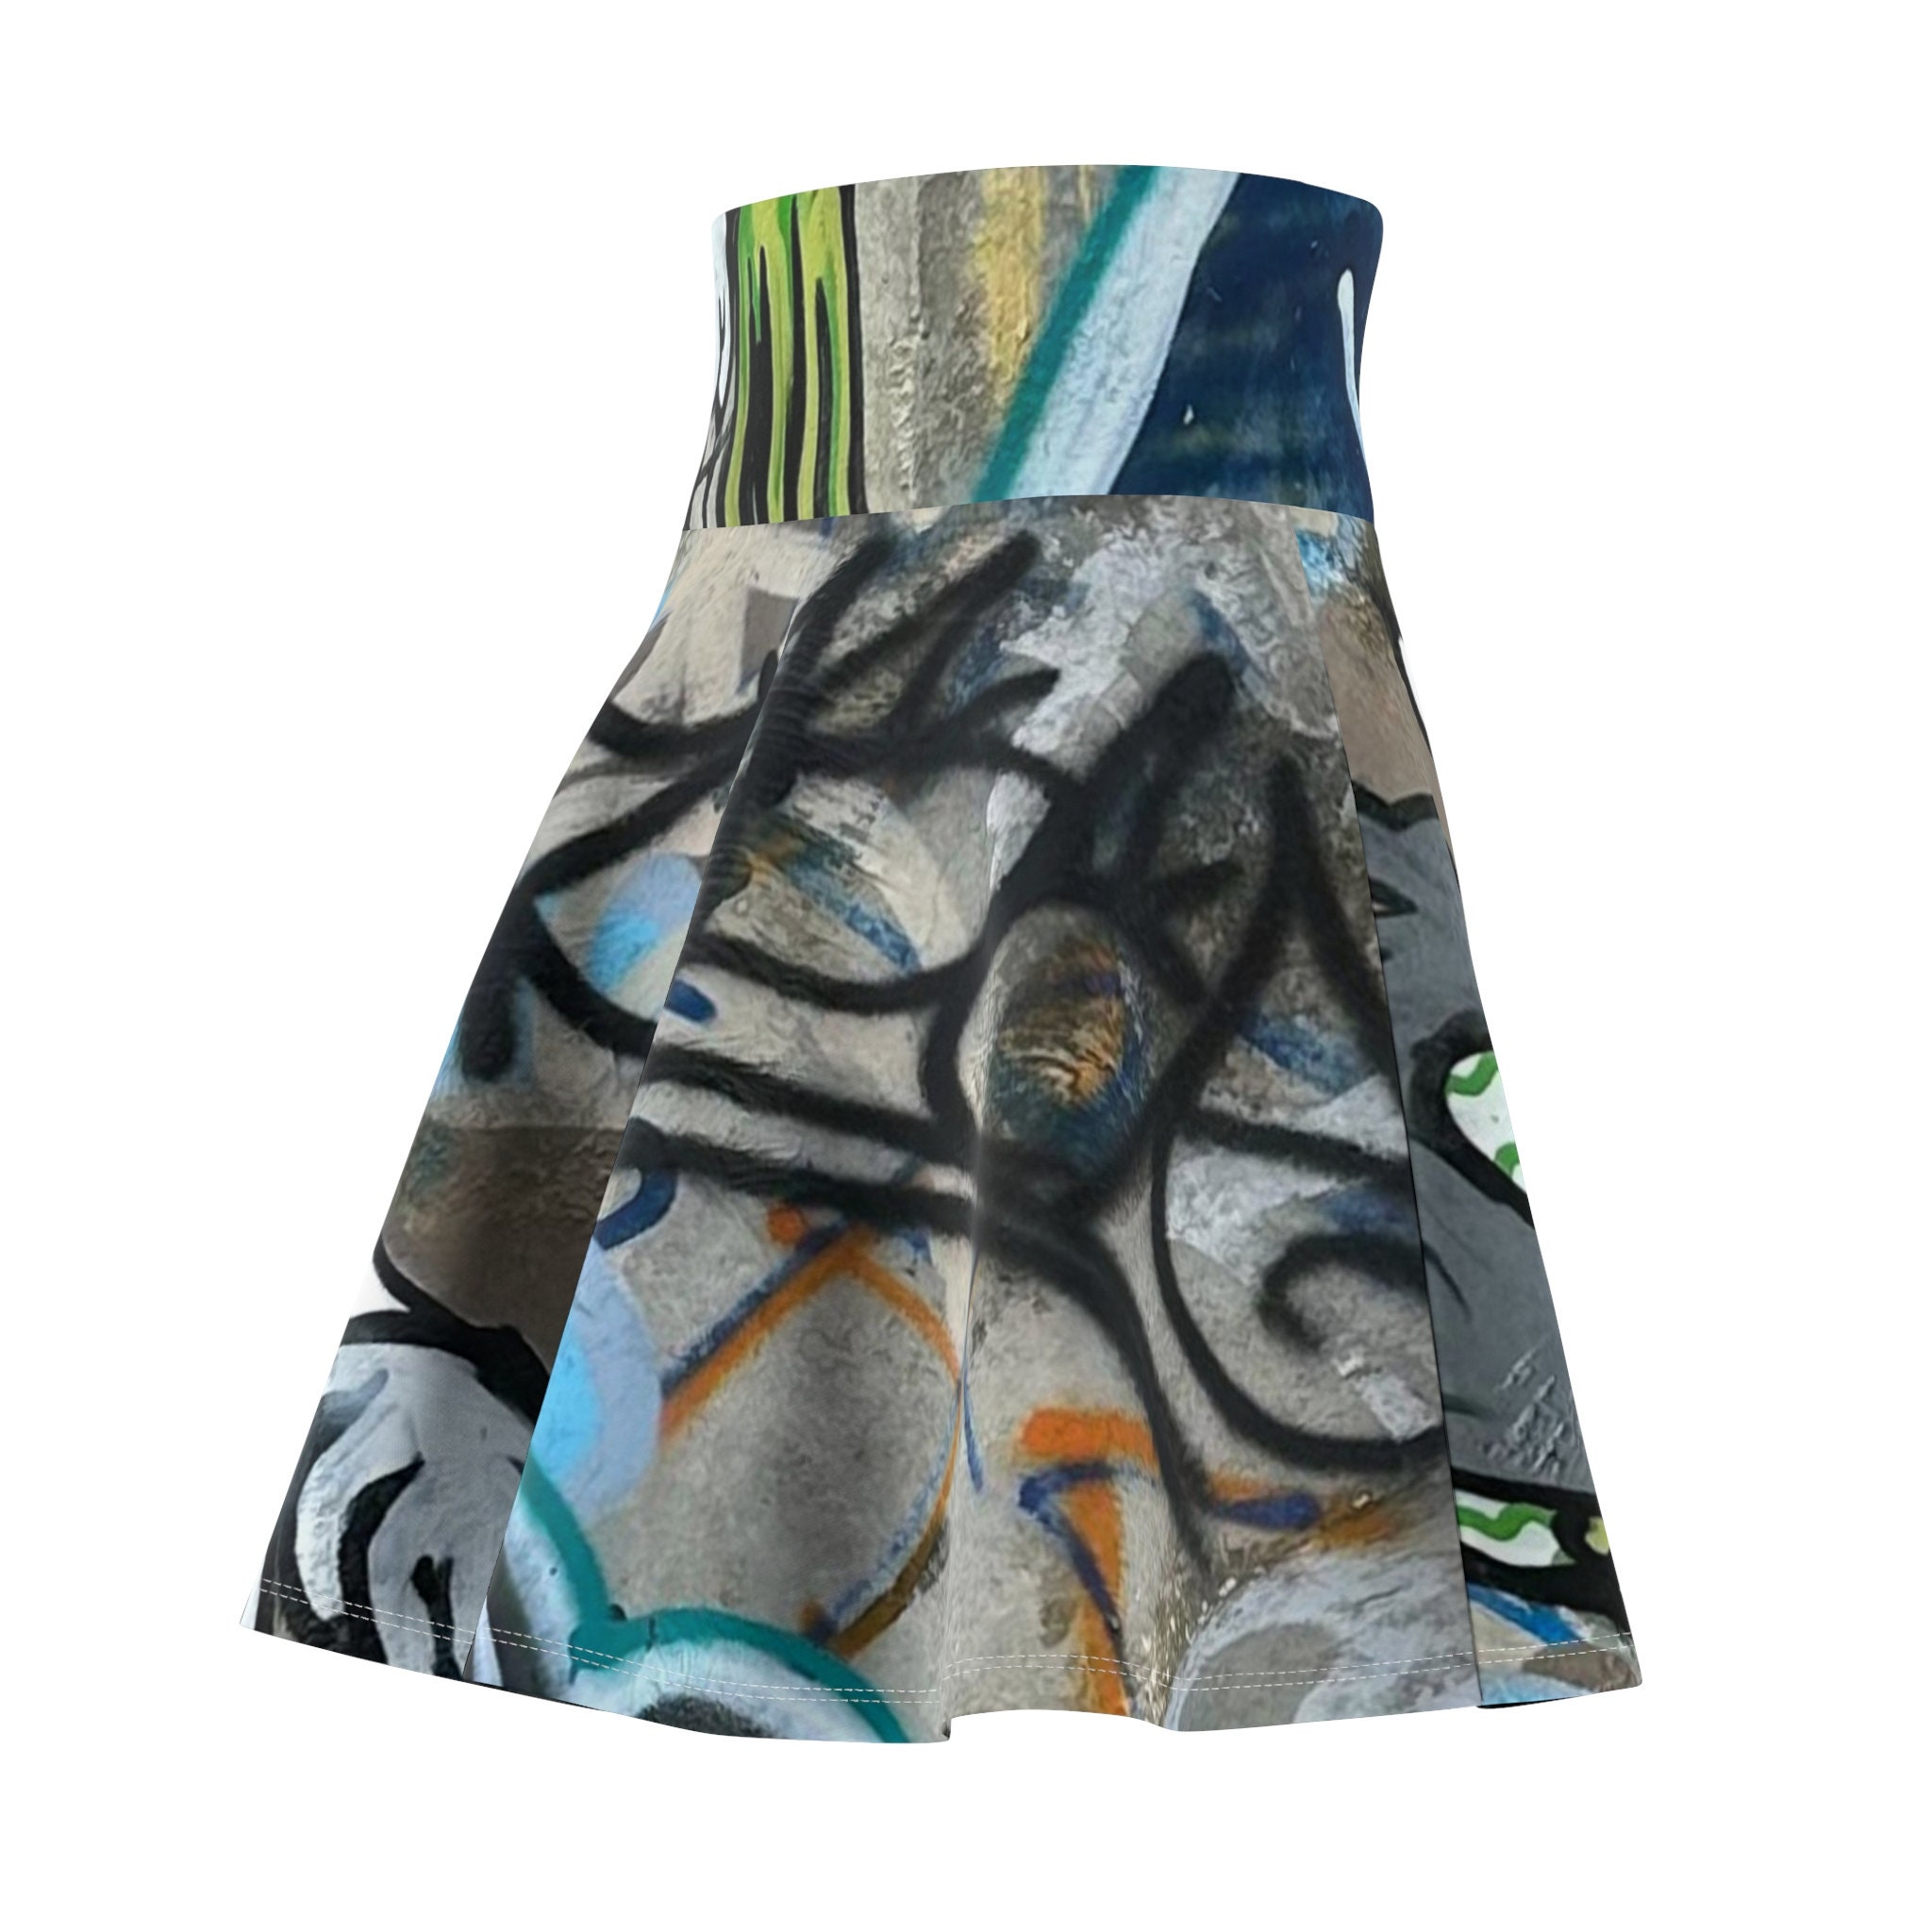 Graffiti Skater Skirt, Women's Skater Skirt